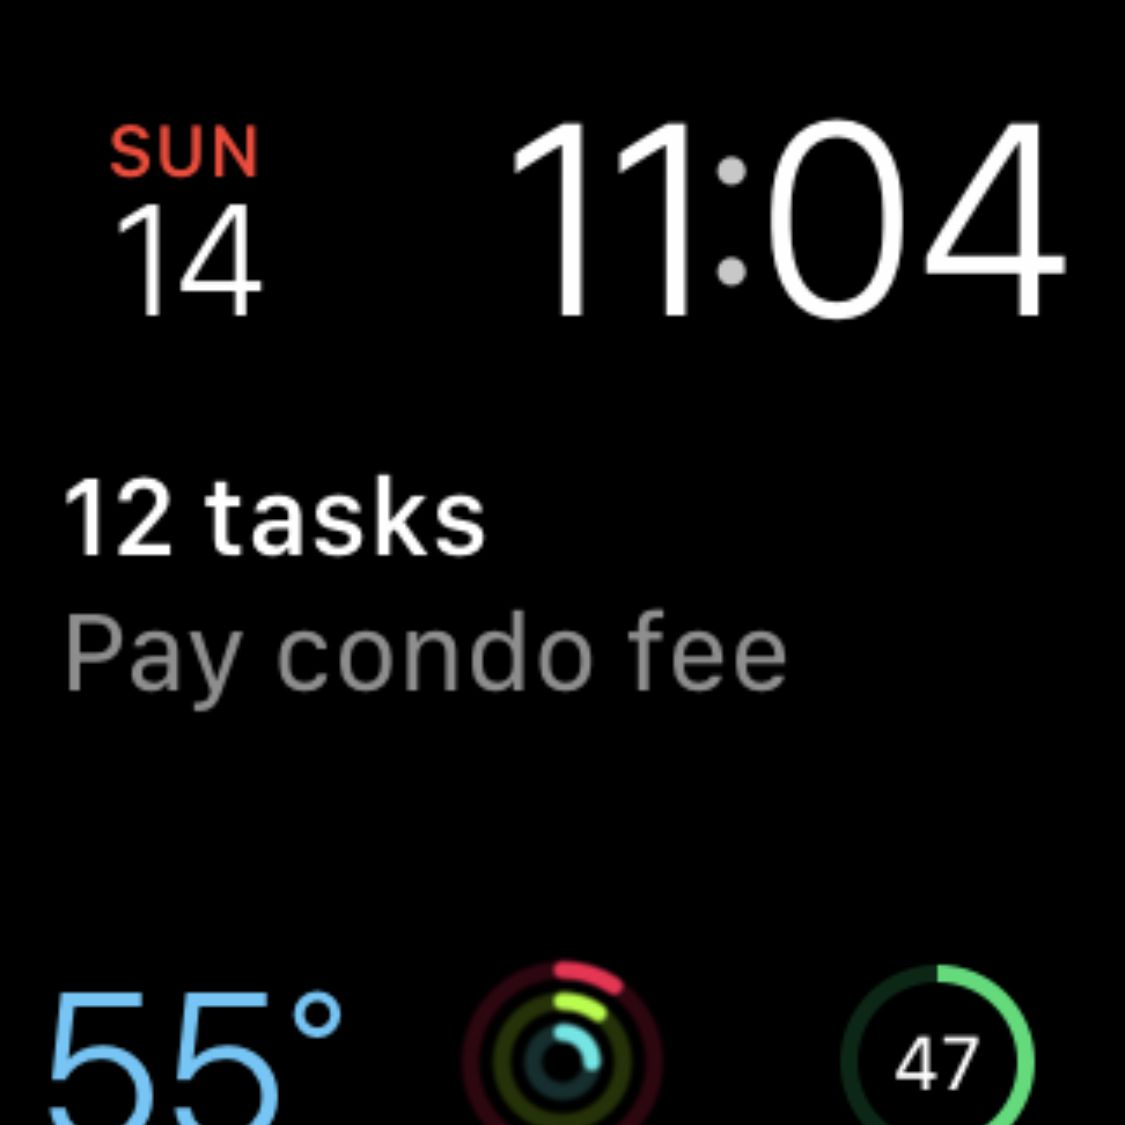 Snímek obrazovky Apple Watch zobrazený v aplikaci Fotky iPhone